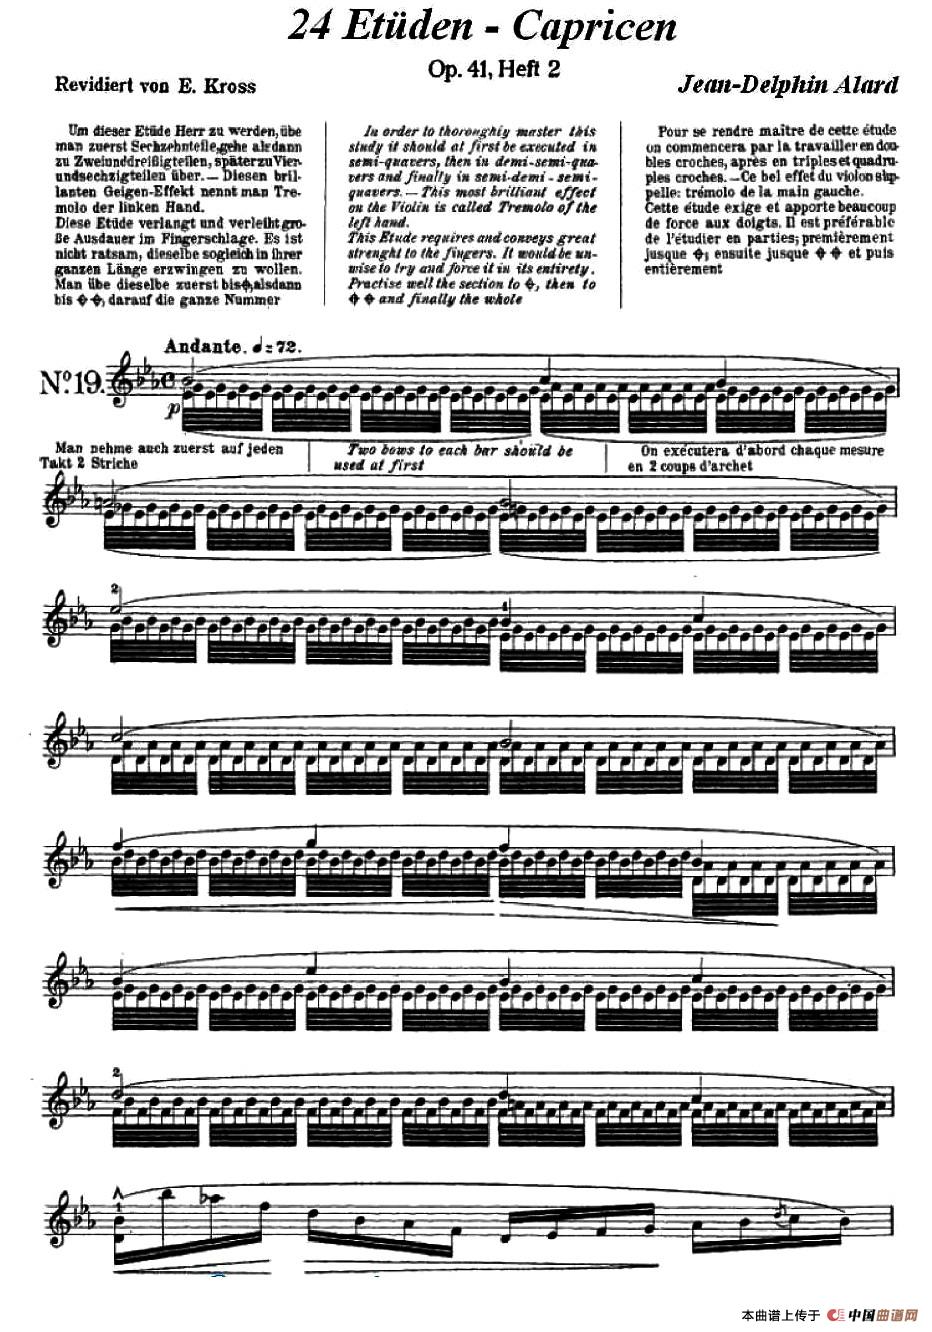 让·德尔菲·阿拉尔-12首小提琴隨想练习曲之19小提琴谱